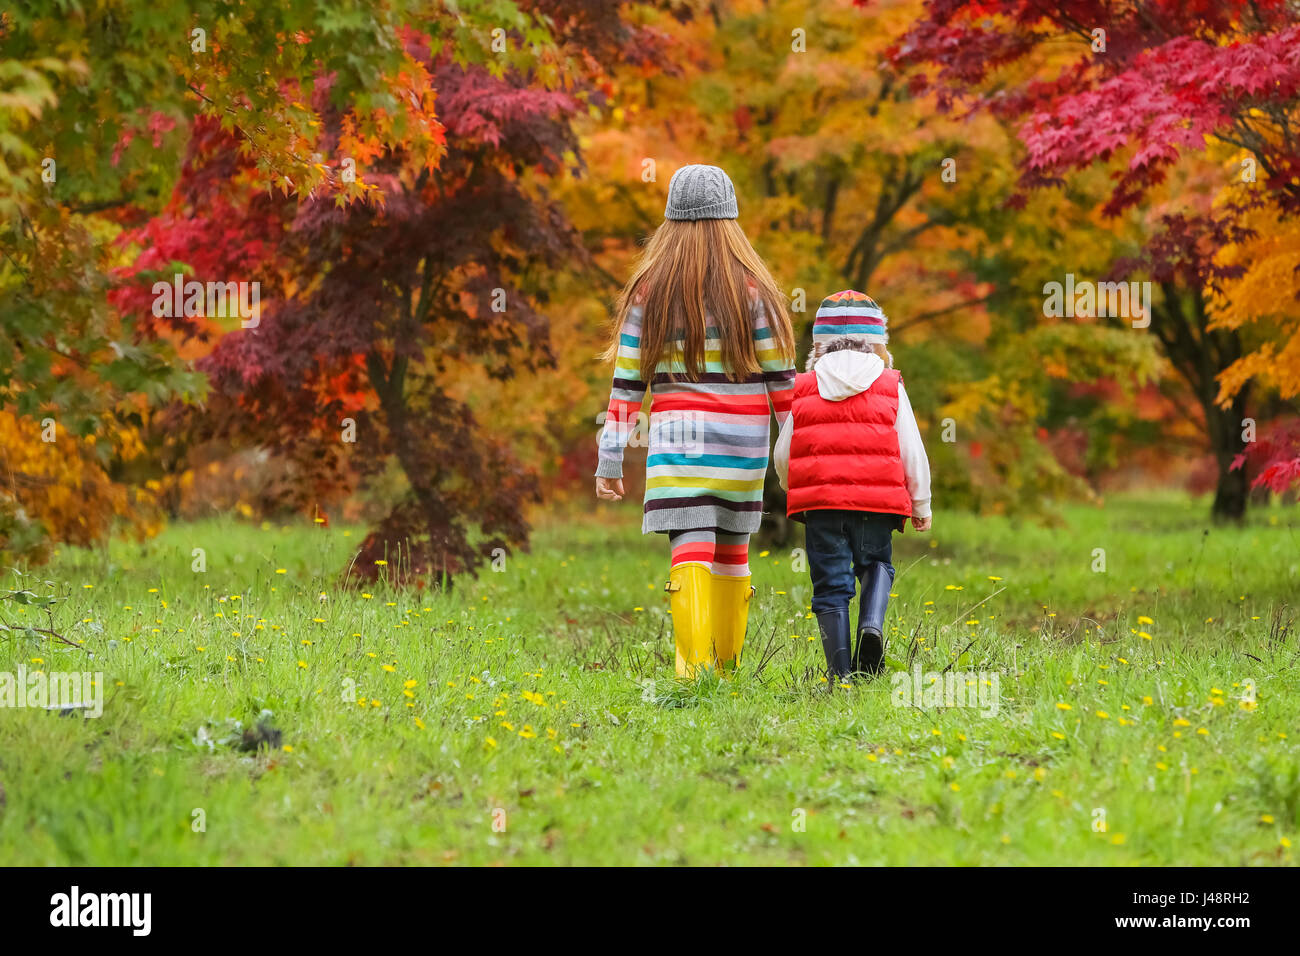 Ein kleiner Junge und ein Mädchen Gummistiefel und bunte Kleidung tragen  Fuß über ein Feld in Richtung Bäume in leuchtenden Herbstfarben  Stockfotografie - Alamy